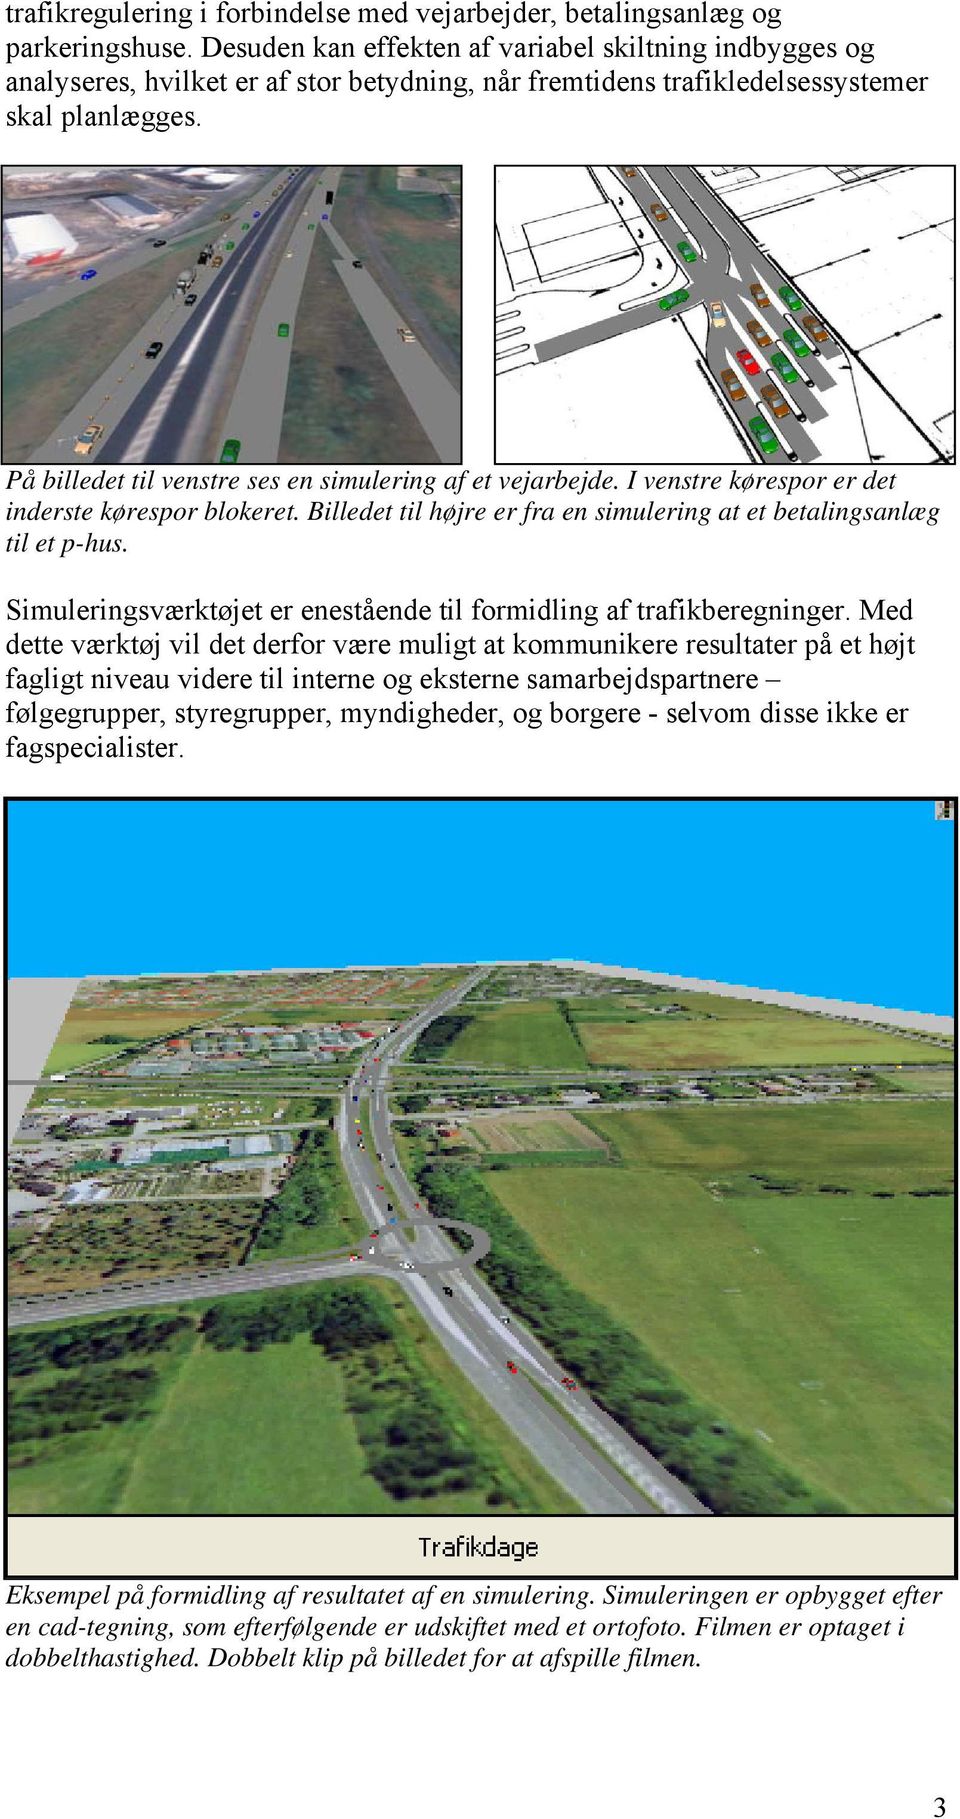 På billedet til venstre ses en simulering af et vejarbejde. I venstre kørespor er det inderste kørespor blokeret. Billedet til højre er fra en simulering at et betalingsanlæg til et p-hus.